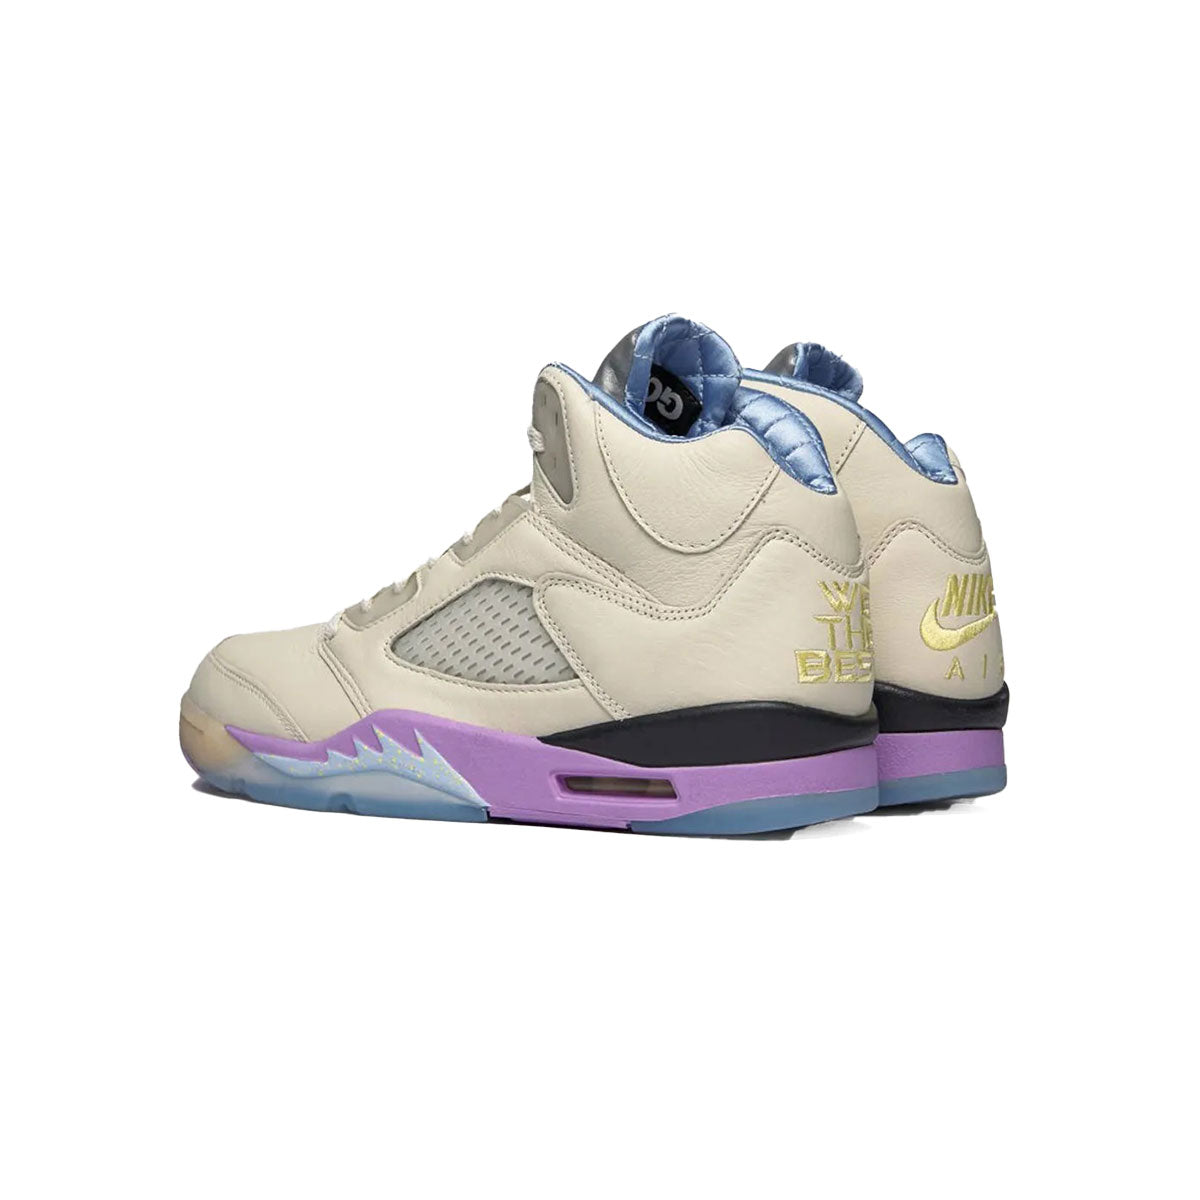 DJ Khaled × Nike Air Jordan 5 Retro SP Sail DJ キャレド × ナイキ エアジョーダン 5 レトロ SP "セイル"【DV4982-175】